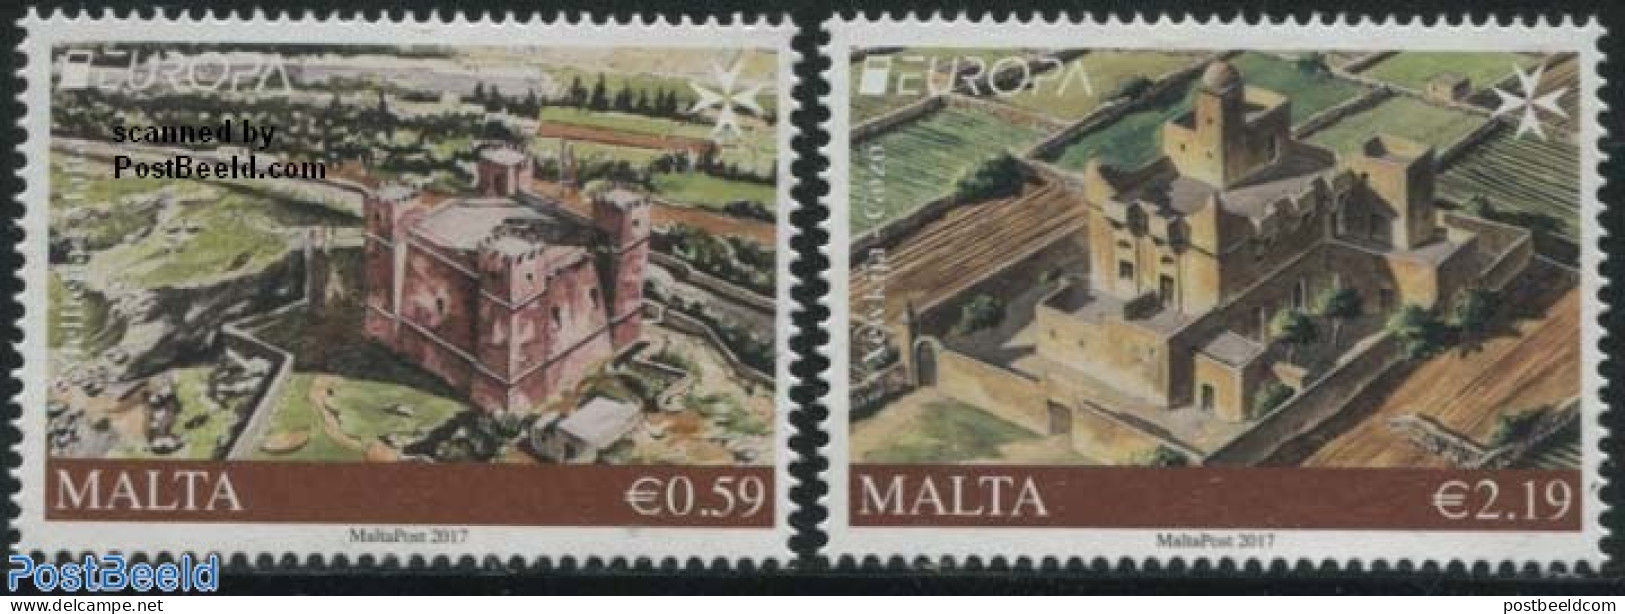 Malta 2017 Europa, Castles 2v, Mint NH, History - Europa (cept) - Art - Castles & Fortifications - Schlösser U. Burgen